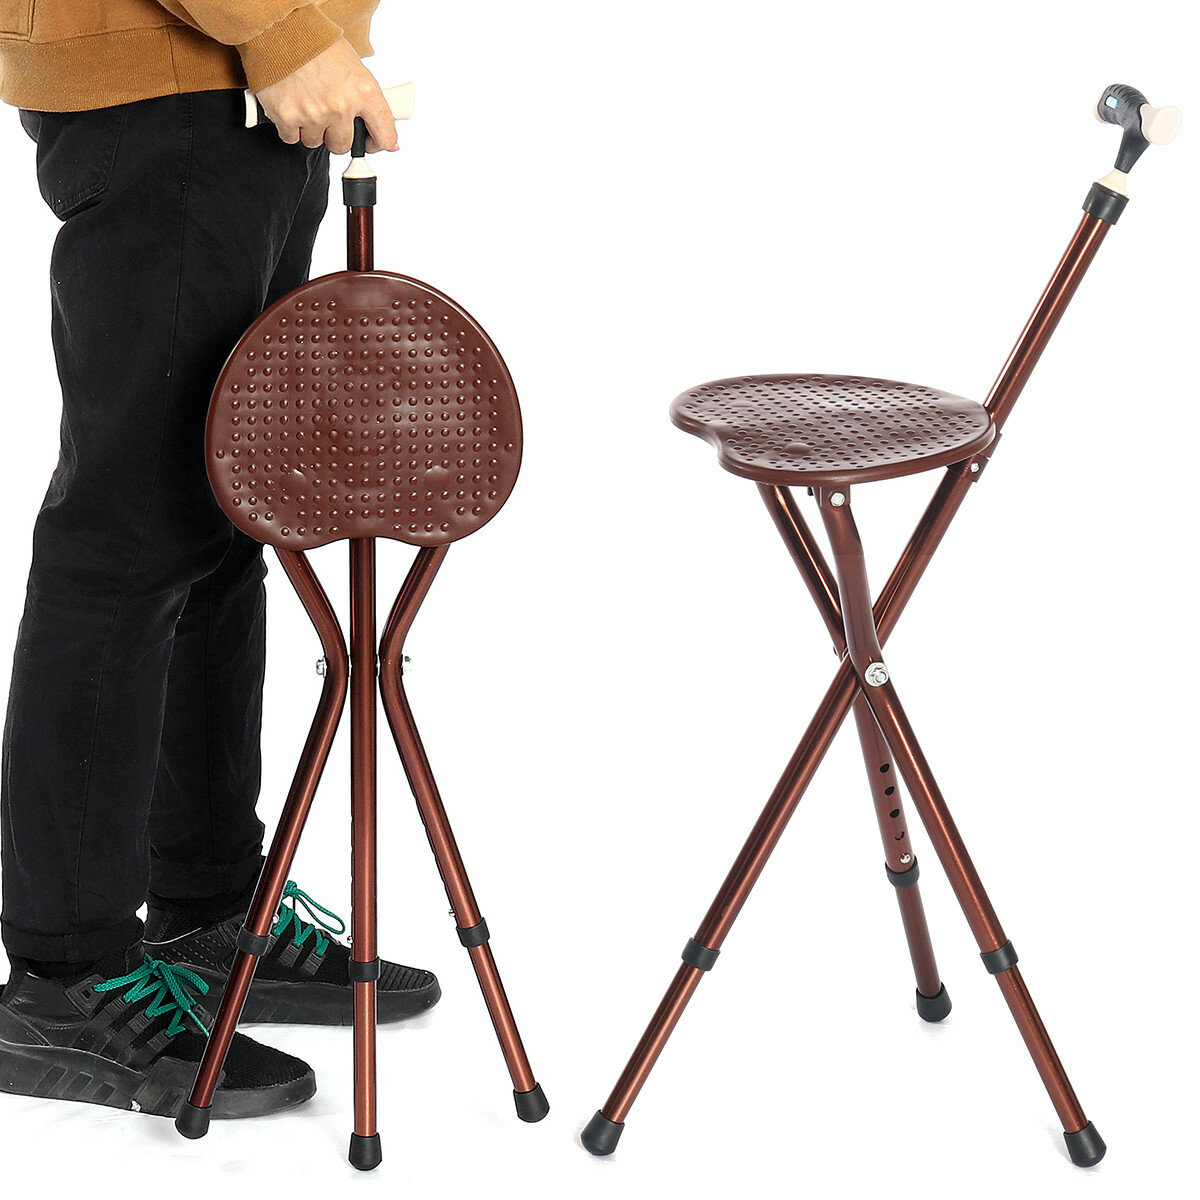 Cadeira dobrável com altura ajustável e bengala com luz LED portátil, cadeira dobrável para caminhar para idosos.